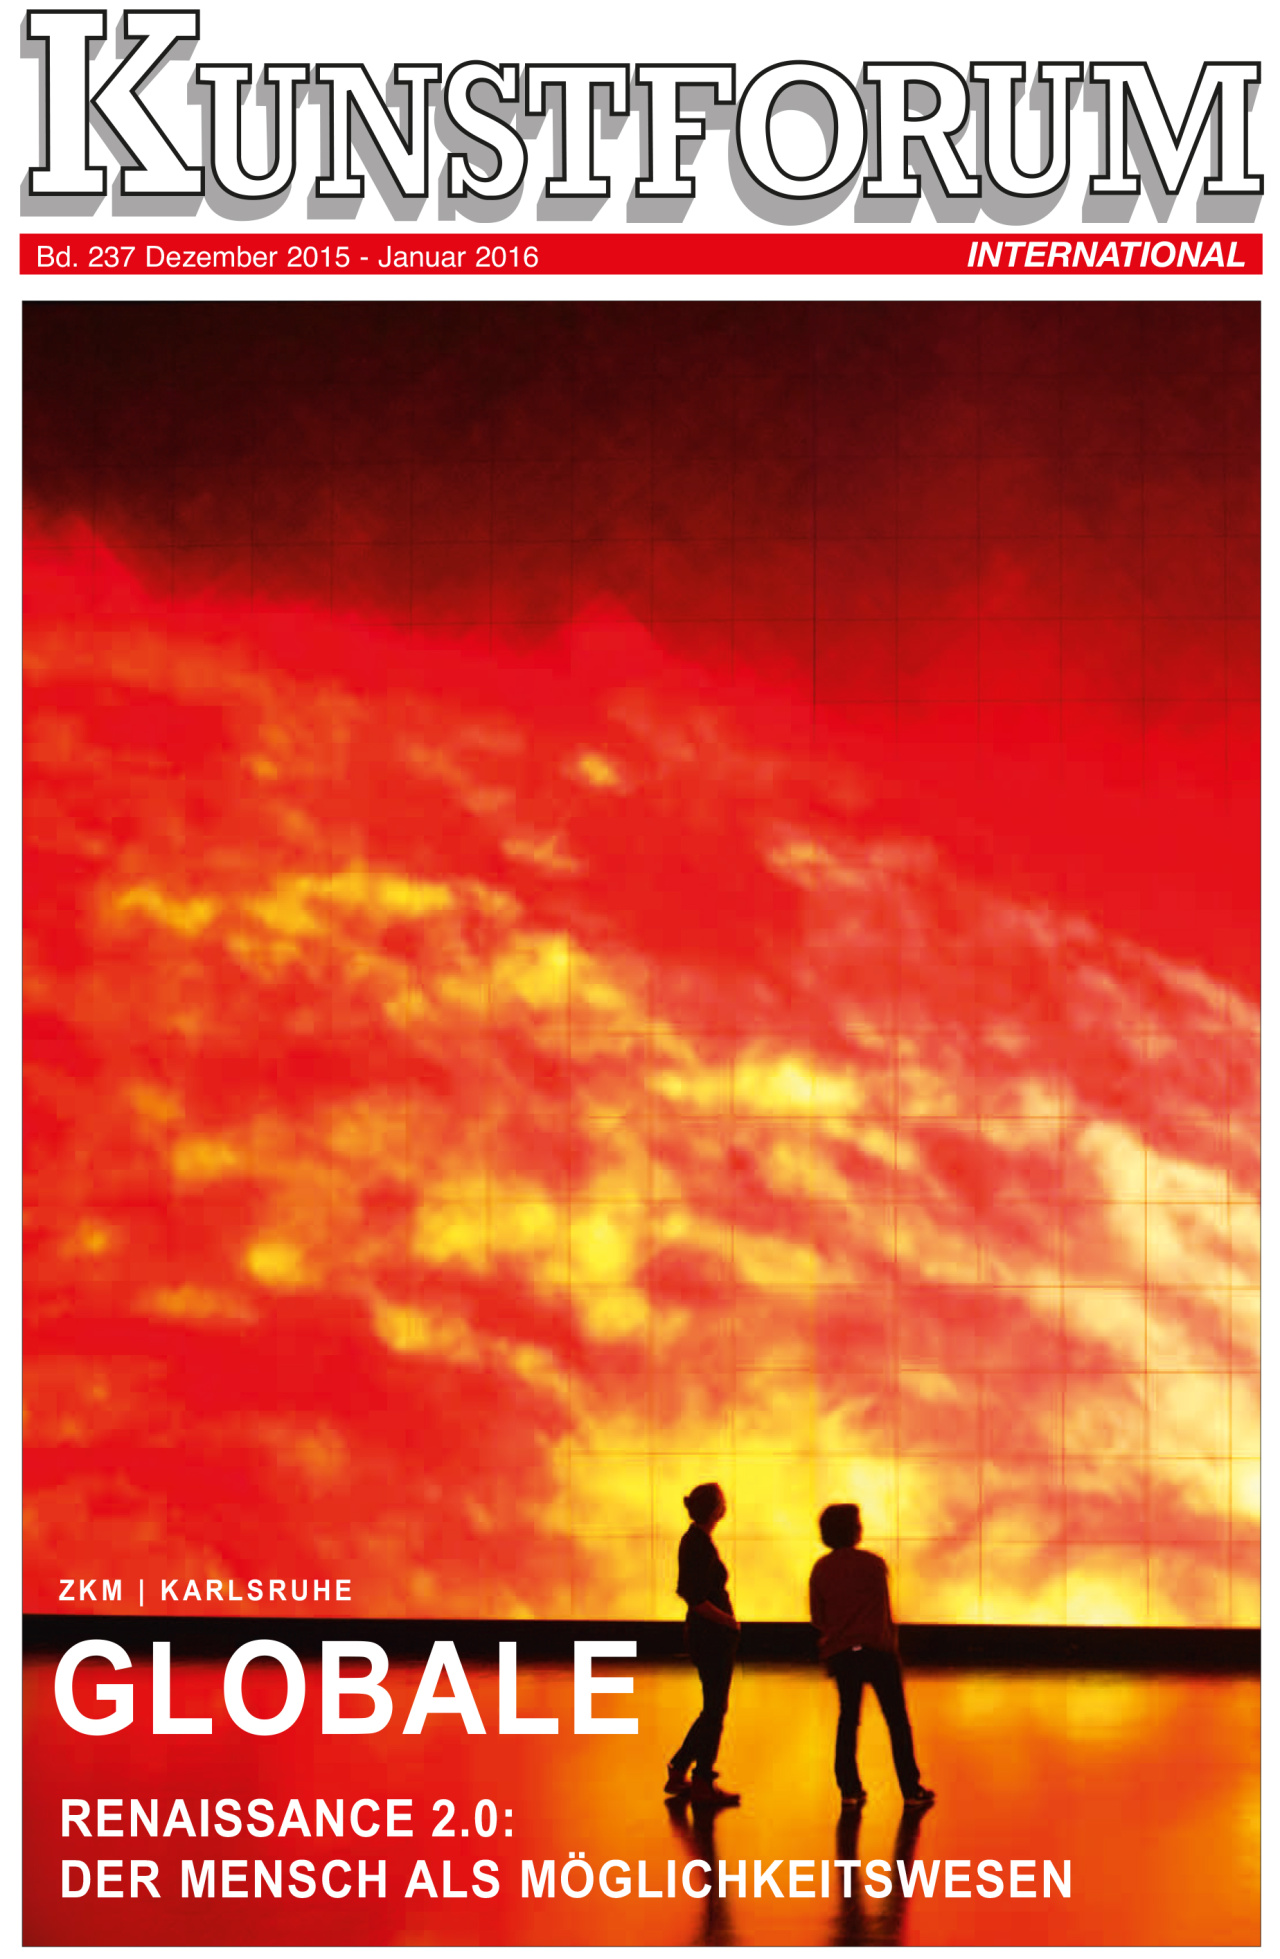 Cover der Zeitschrift »Kunstforum«: Zwei Personen stehen vor einer Projektion, die Sonnenerruptionen zeigt.